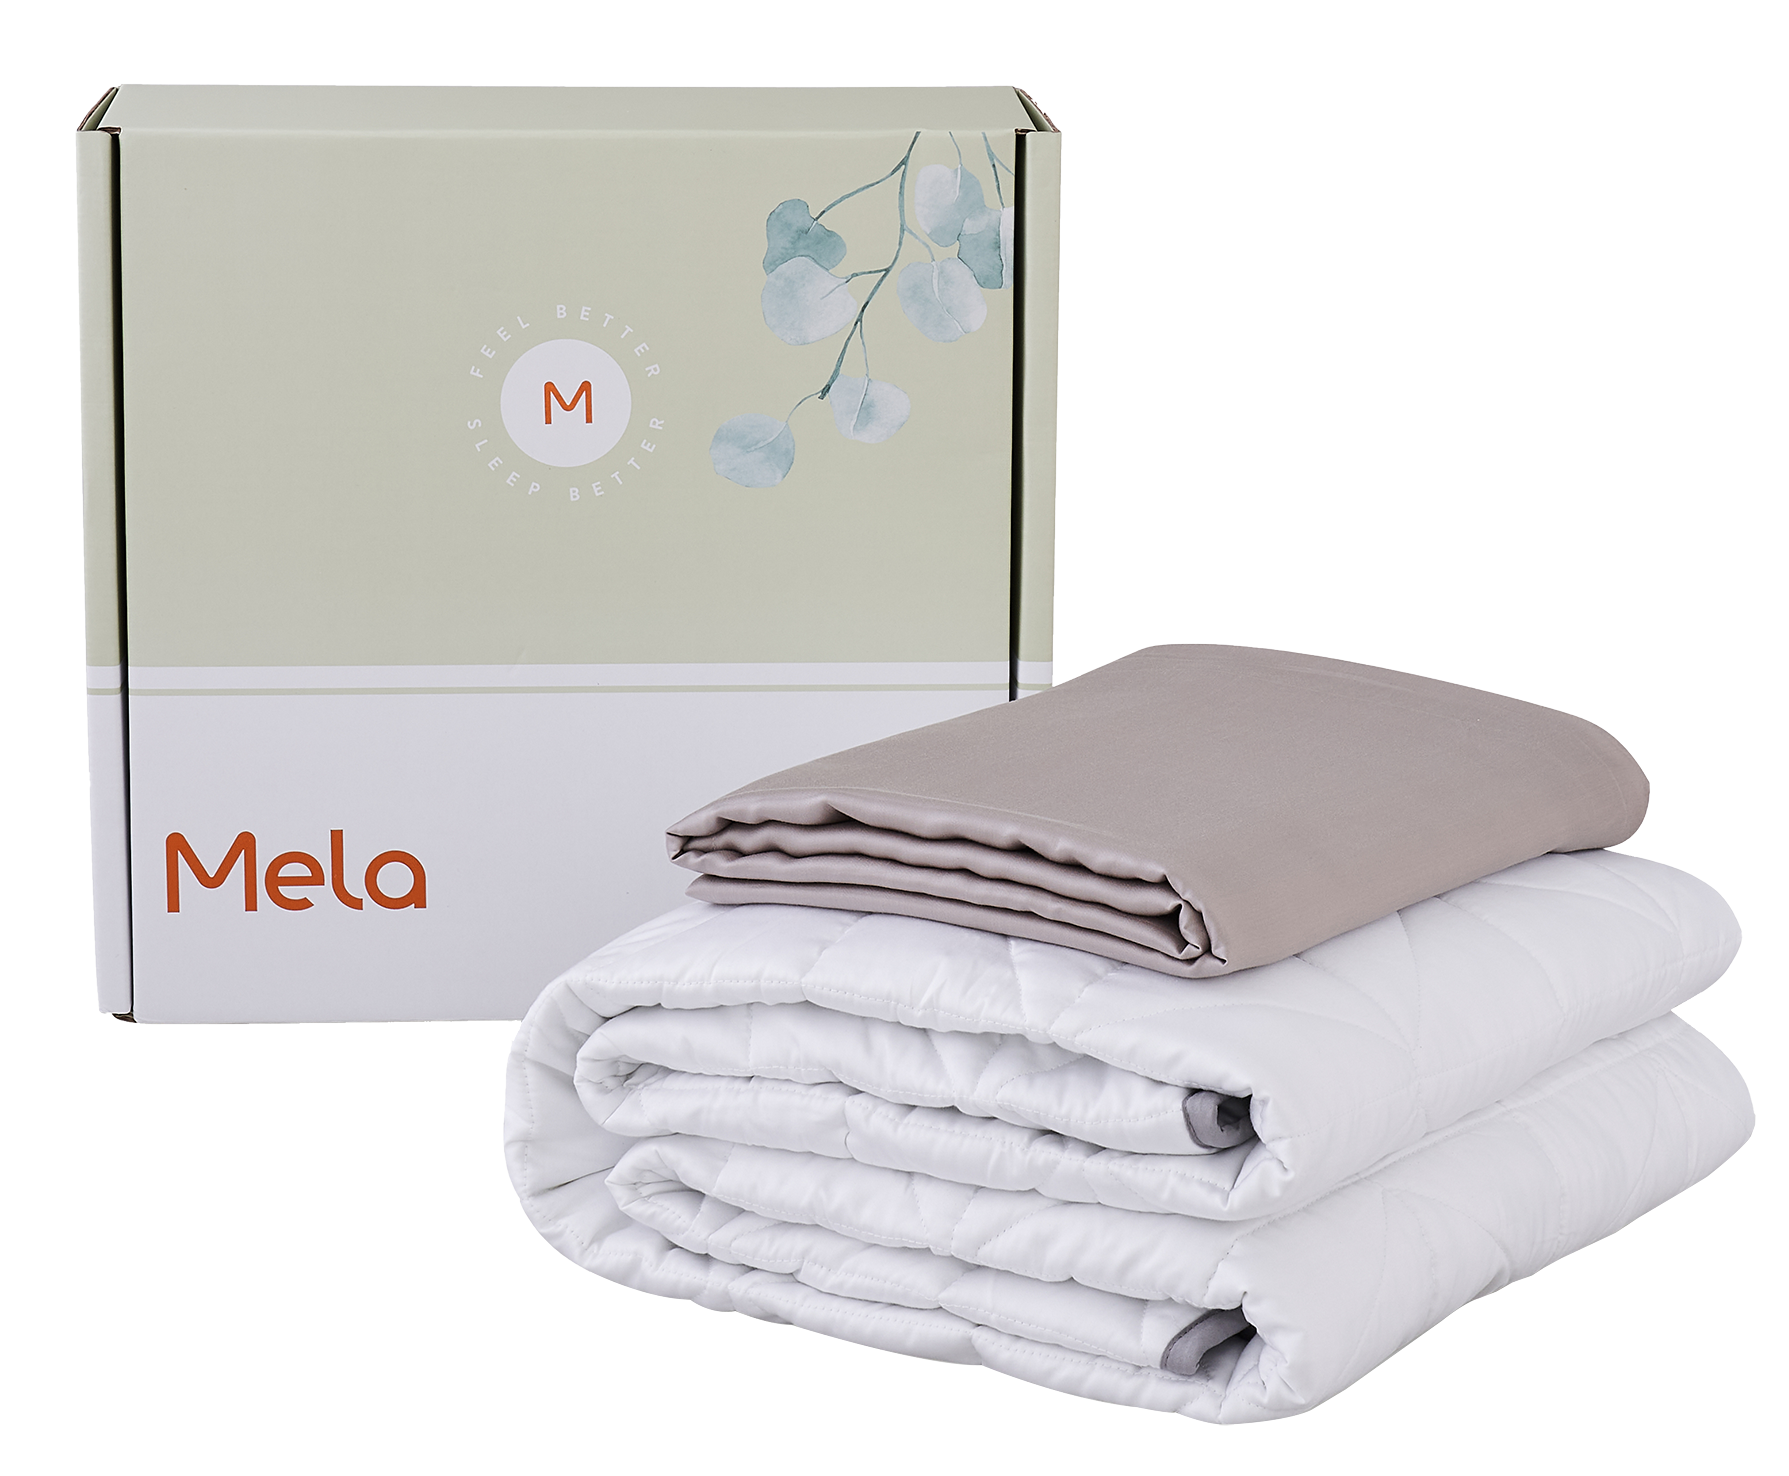 Mela Weighted Blankets | European Spa Magazine